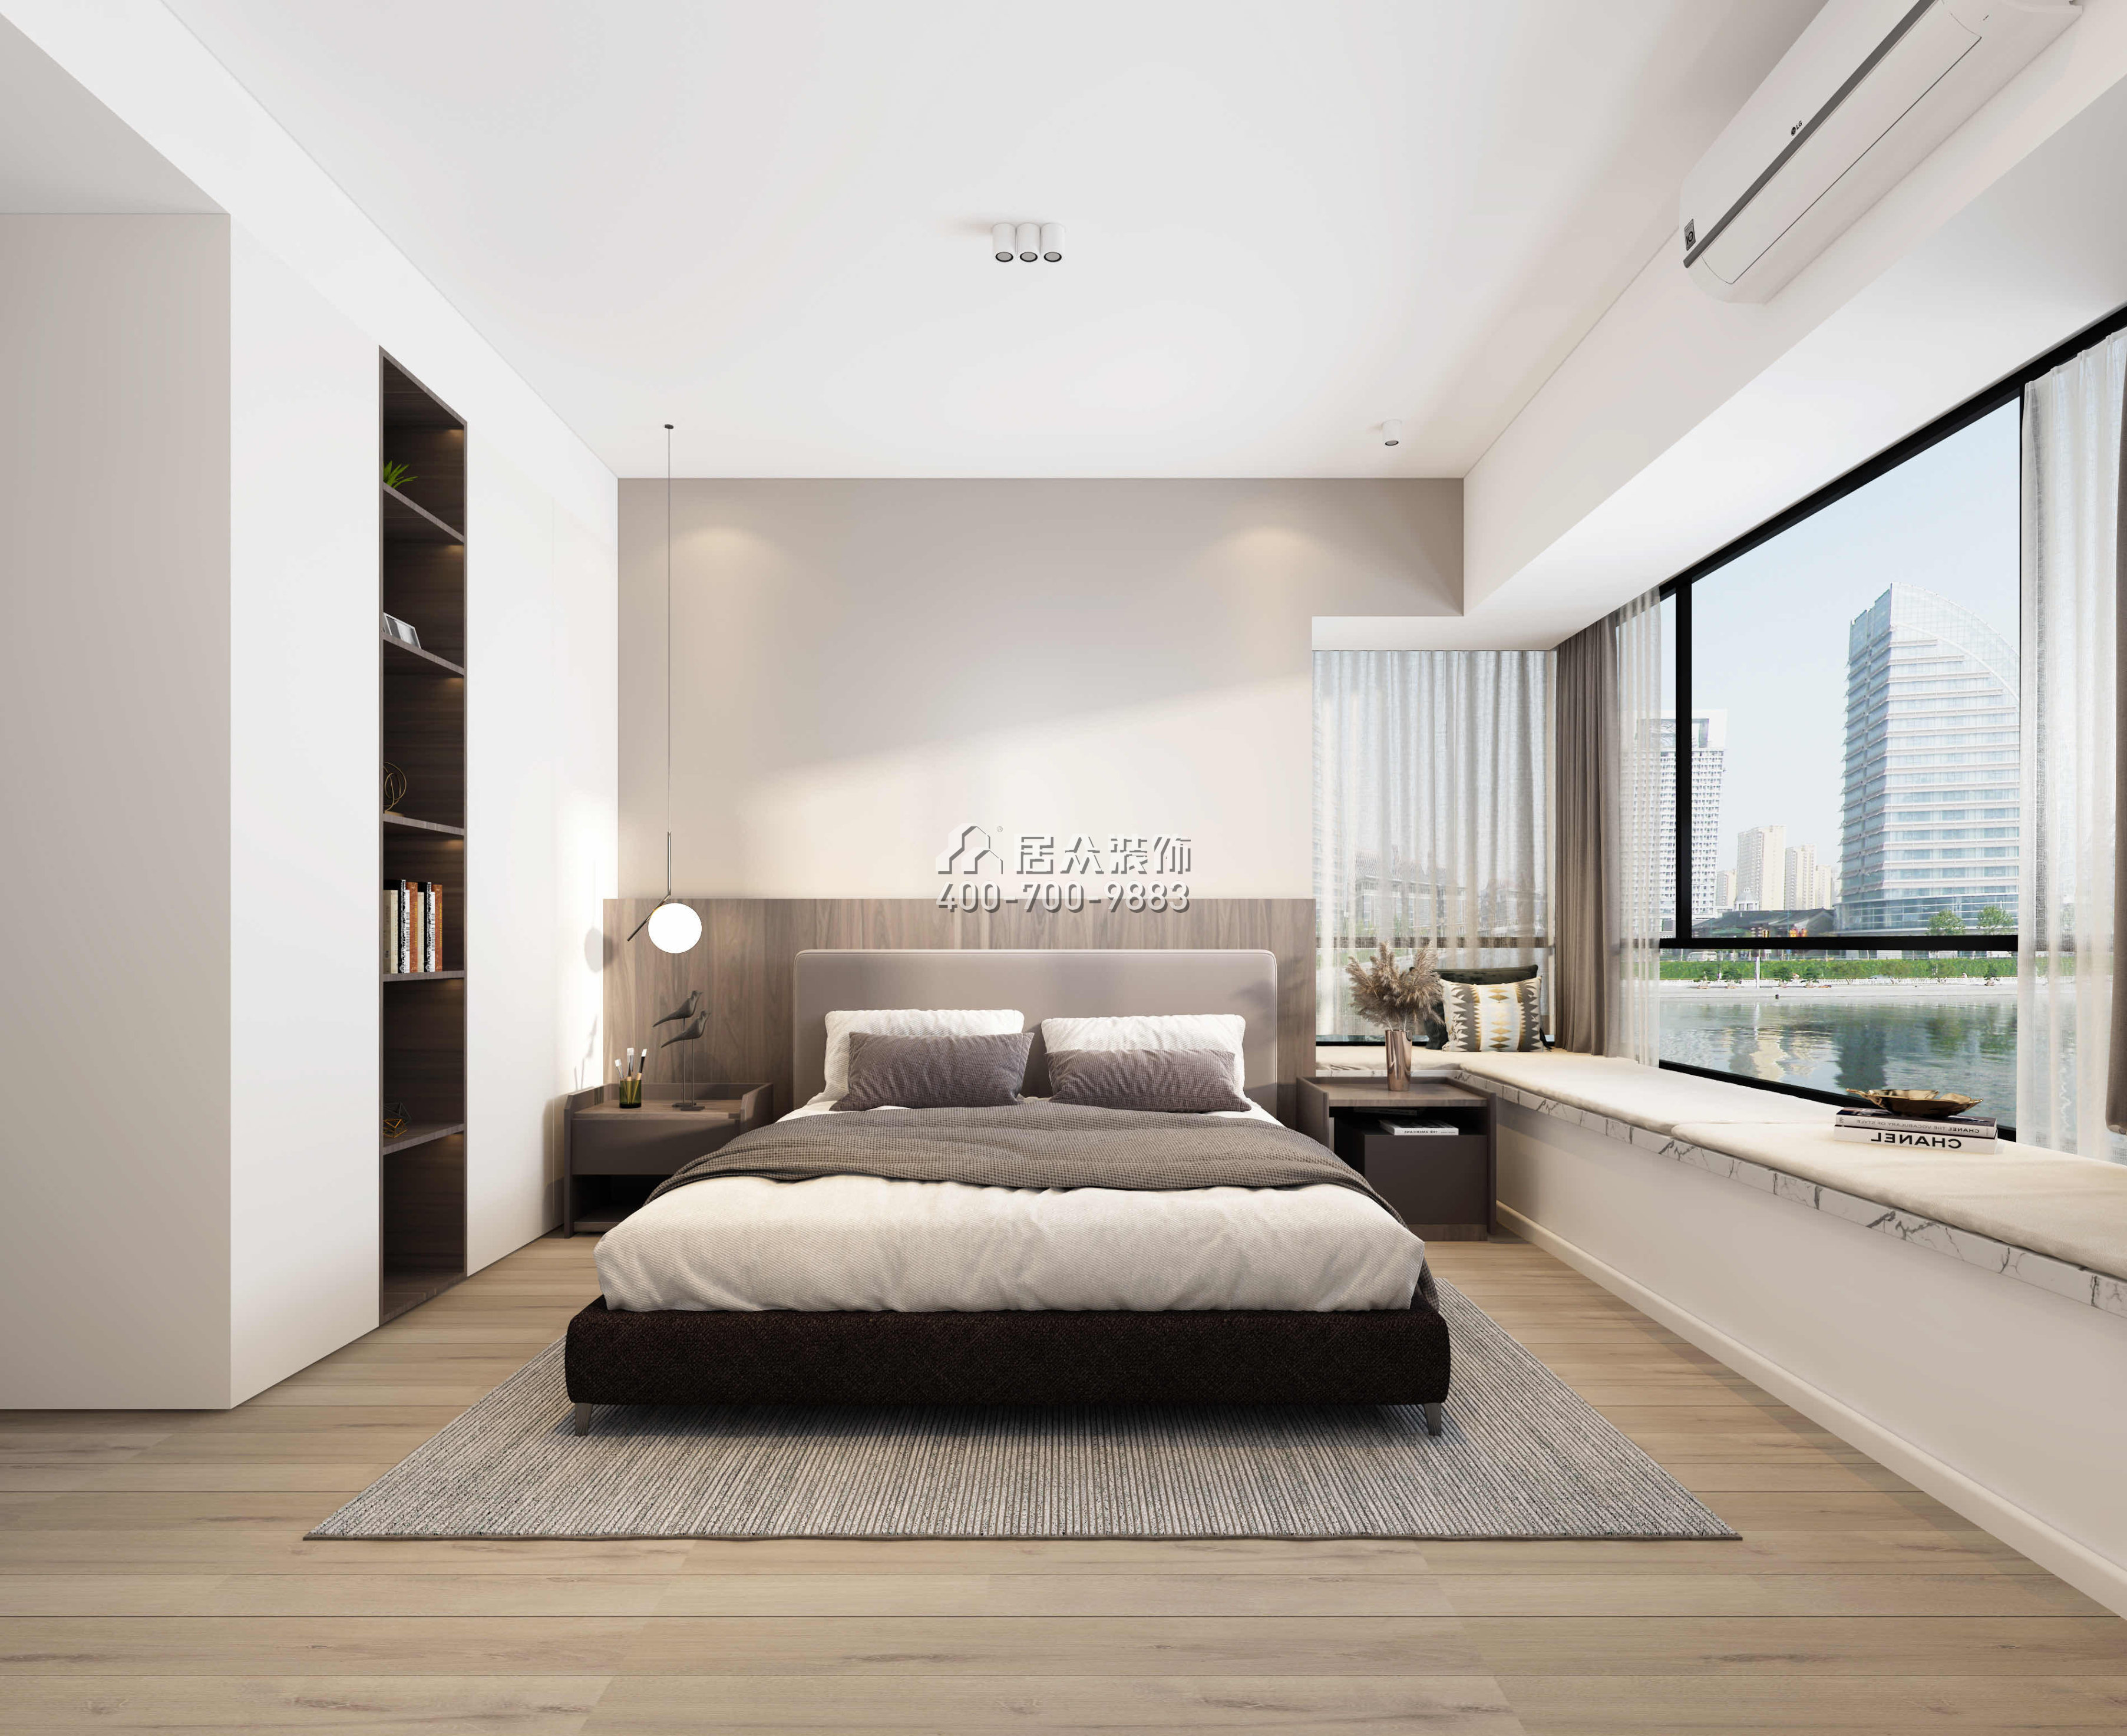 华发广场悦琴湾87平方米现代简约风格平层户型卧室装修效果图